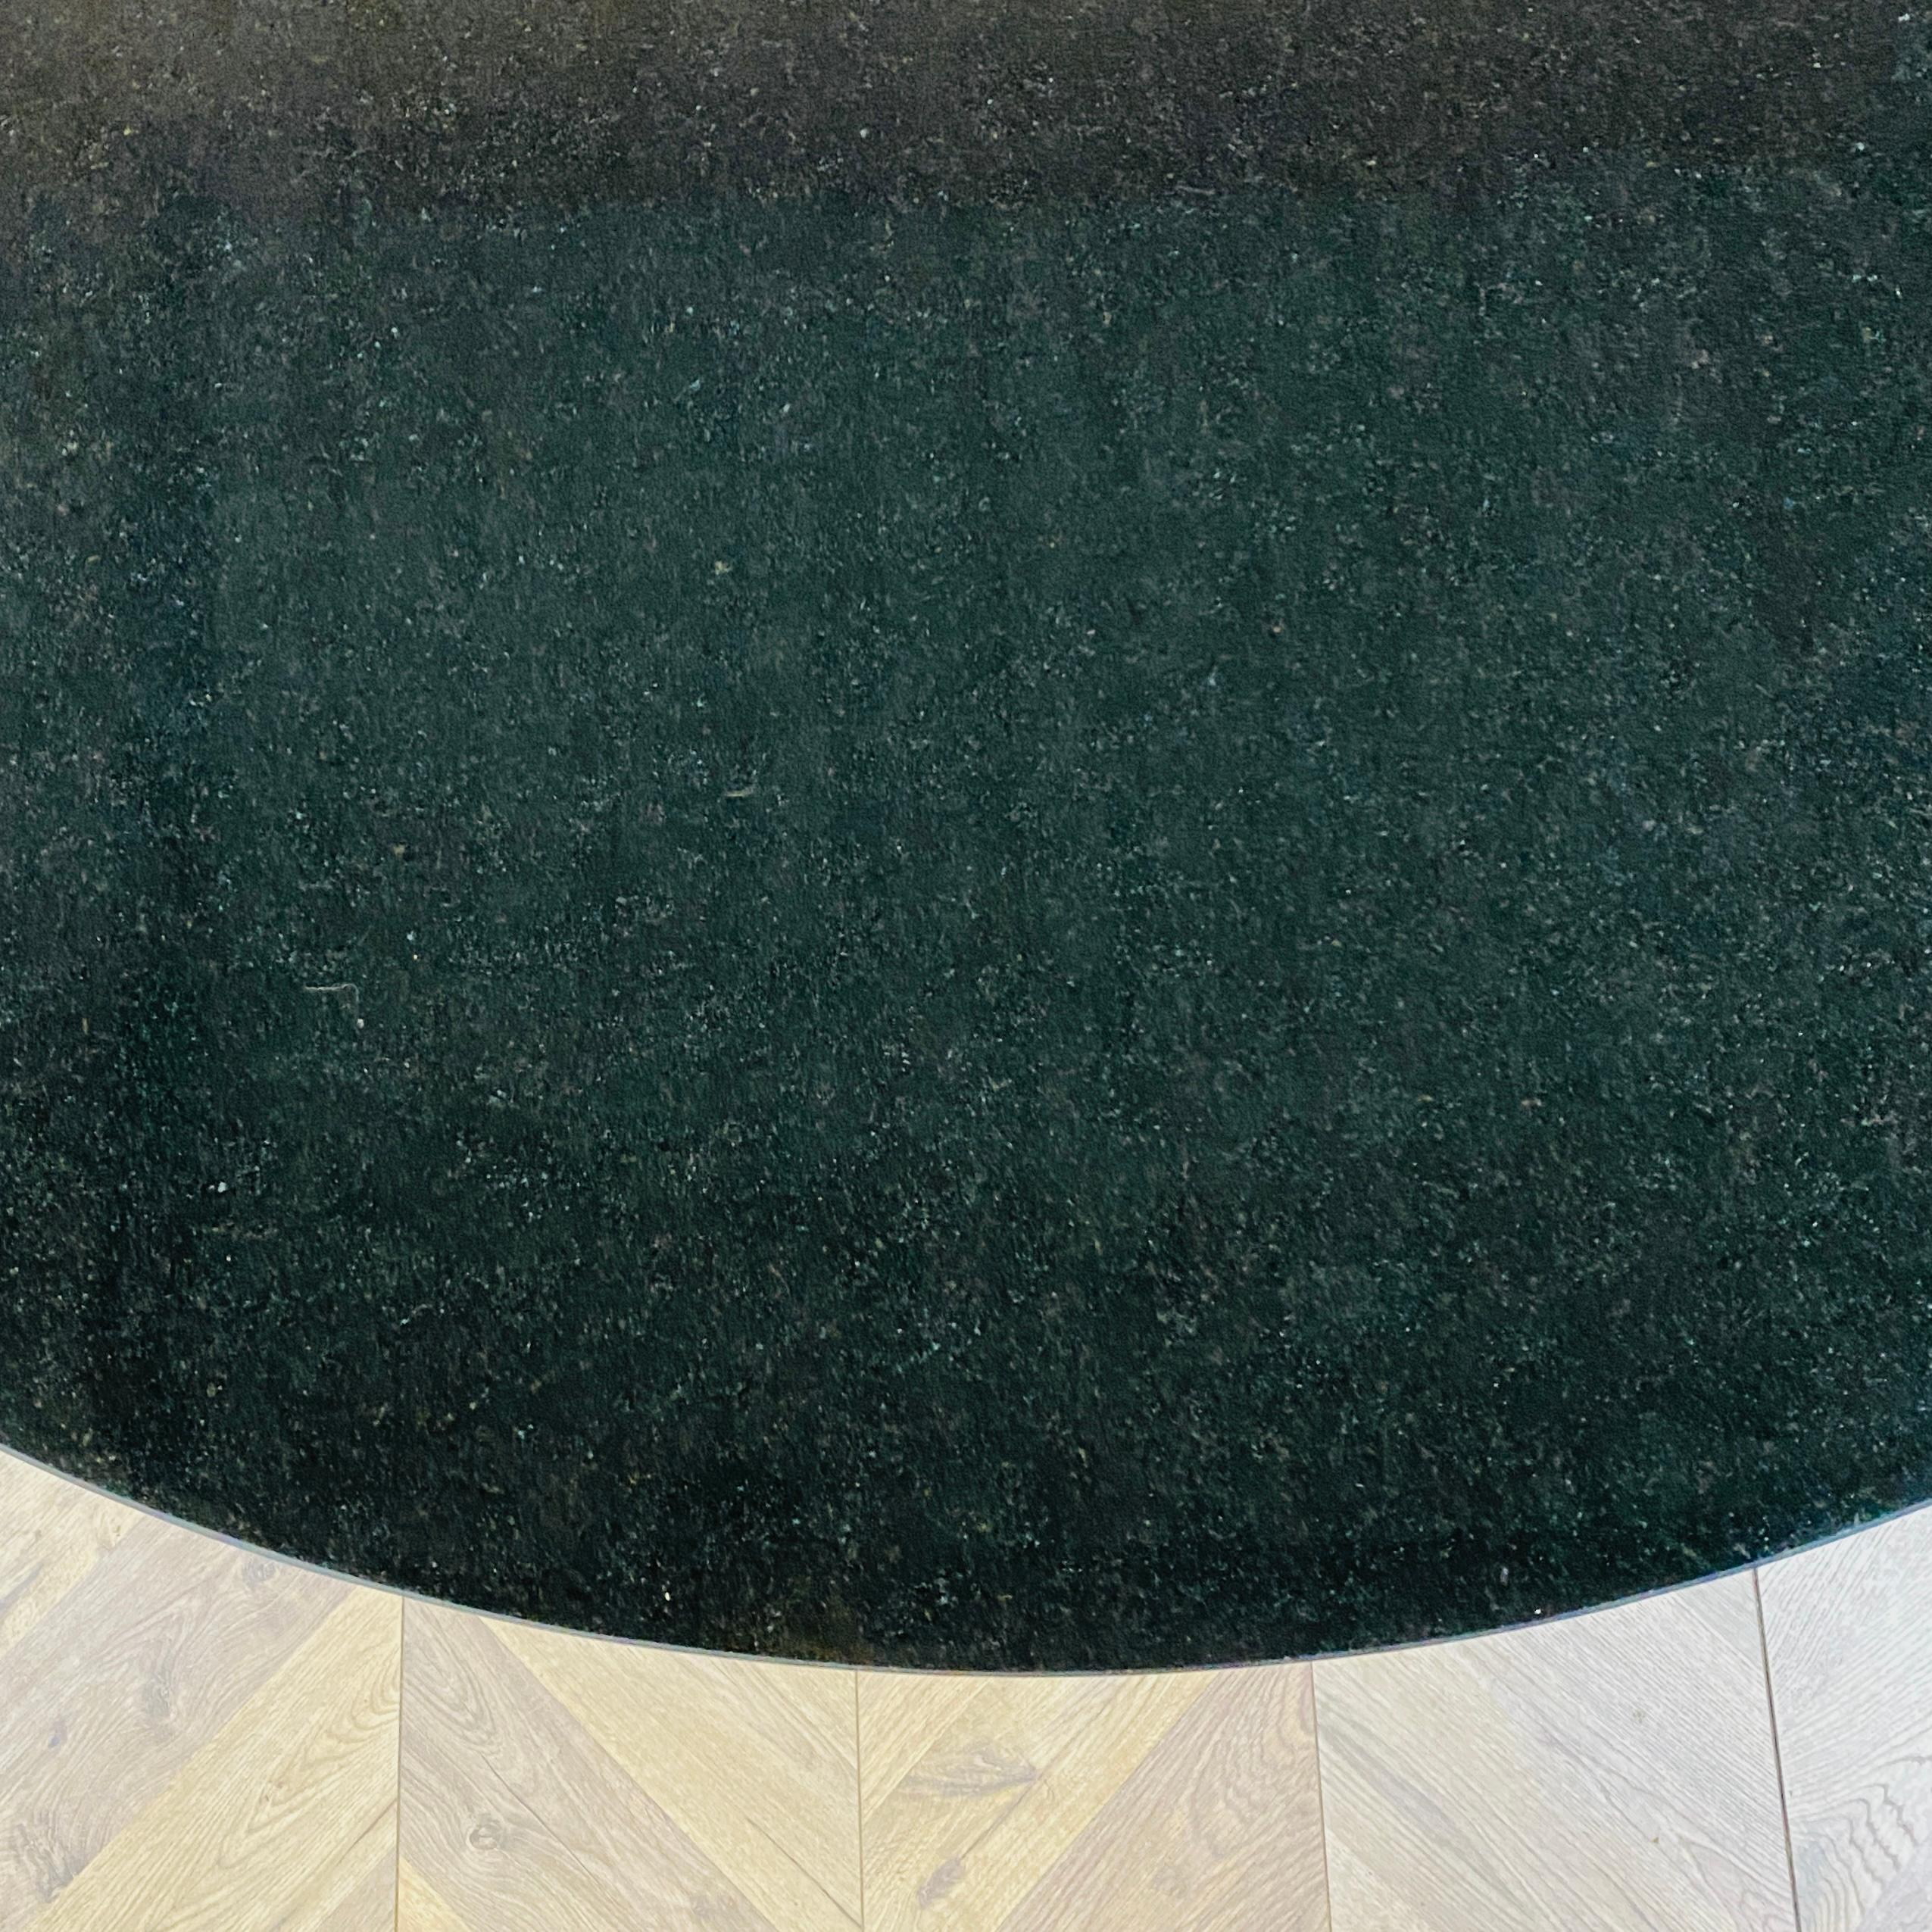 Ein schöner runder Granit- und Chrom-Esstisch im Stil von Eero Saarinens Tulip Table, etwa 1970er Jahre.

Die Tischplatte ist extrem schwer und besteht aus schwarzem Granit.

Der Tisch ist in einem sehr guten Zustand, mit nur kleinen Schrammen,